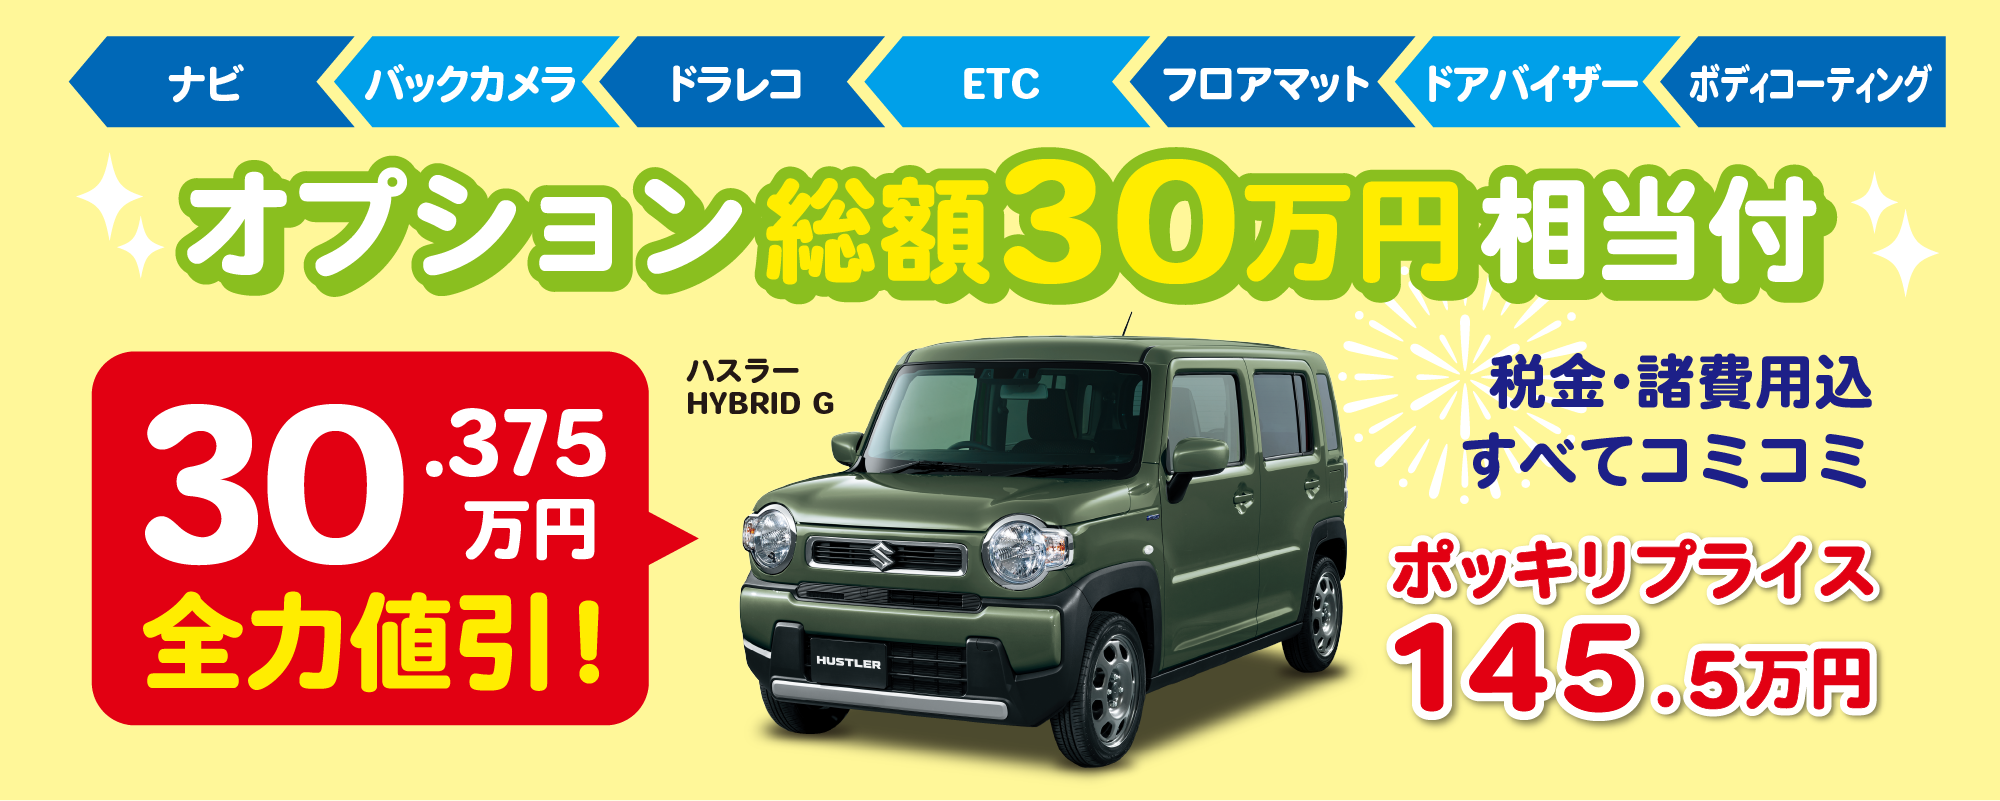 姫路でお車購入なら新車 中古車のフジオカが全てサポートします カーフジオカ